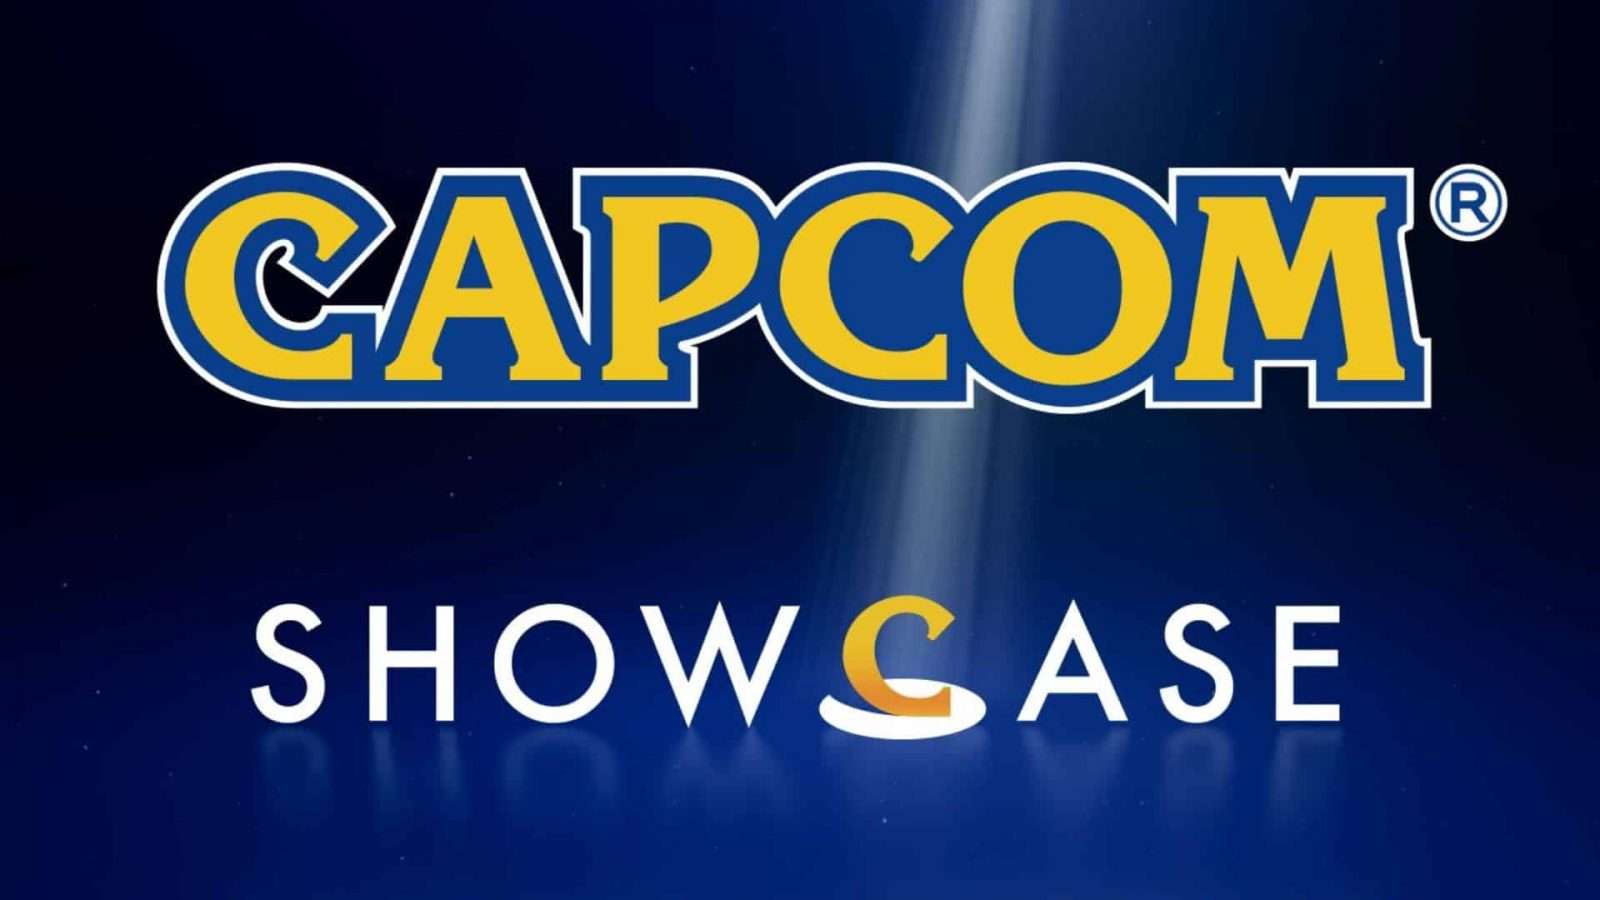 capcom showcase logo 2022